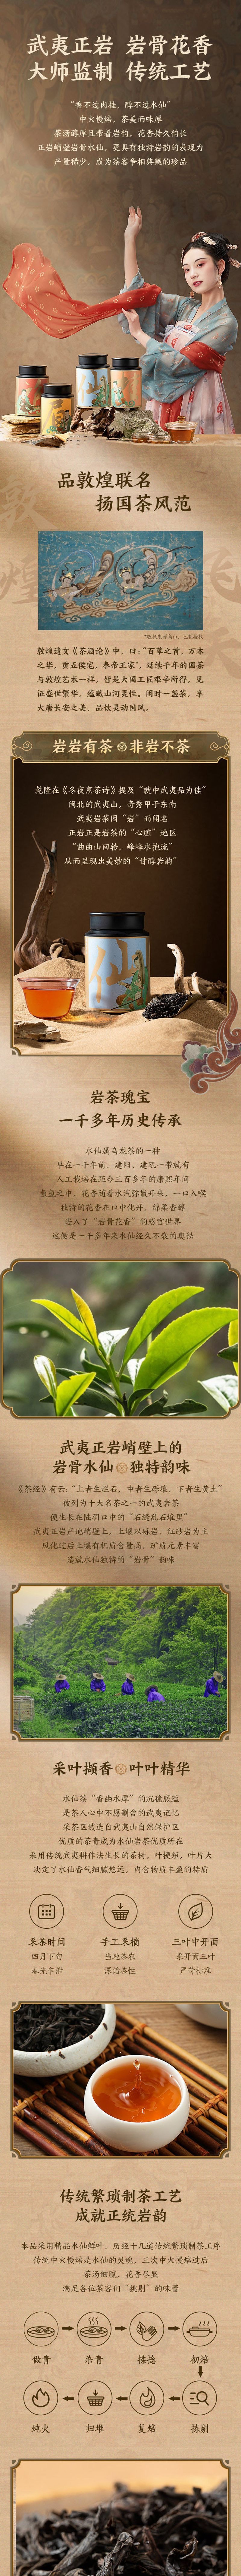 【中国直邮】网易严选 源自武夷正岩产区 特级水仙 茶叶 2罐(60克*2罐)